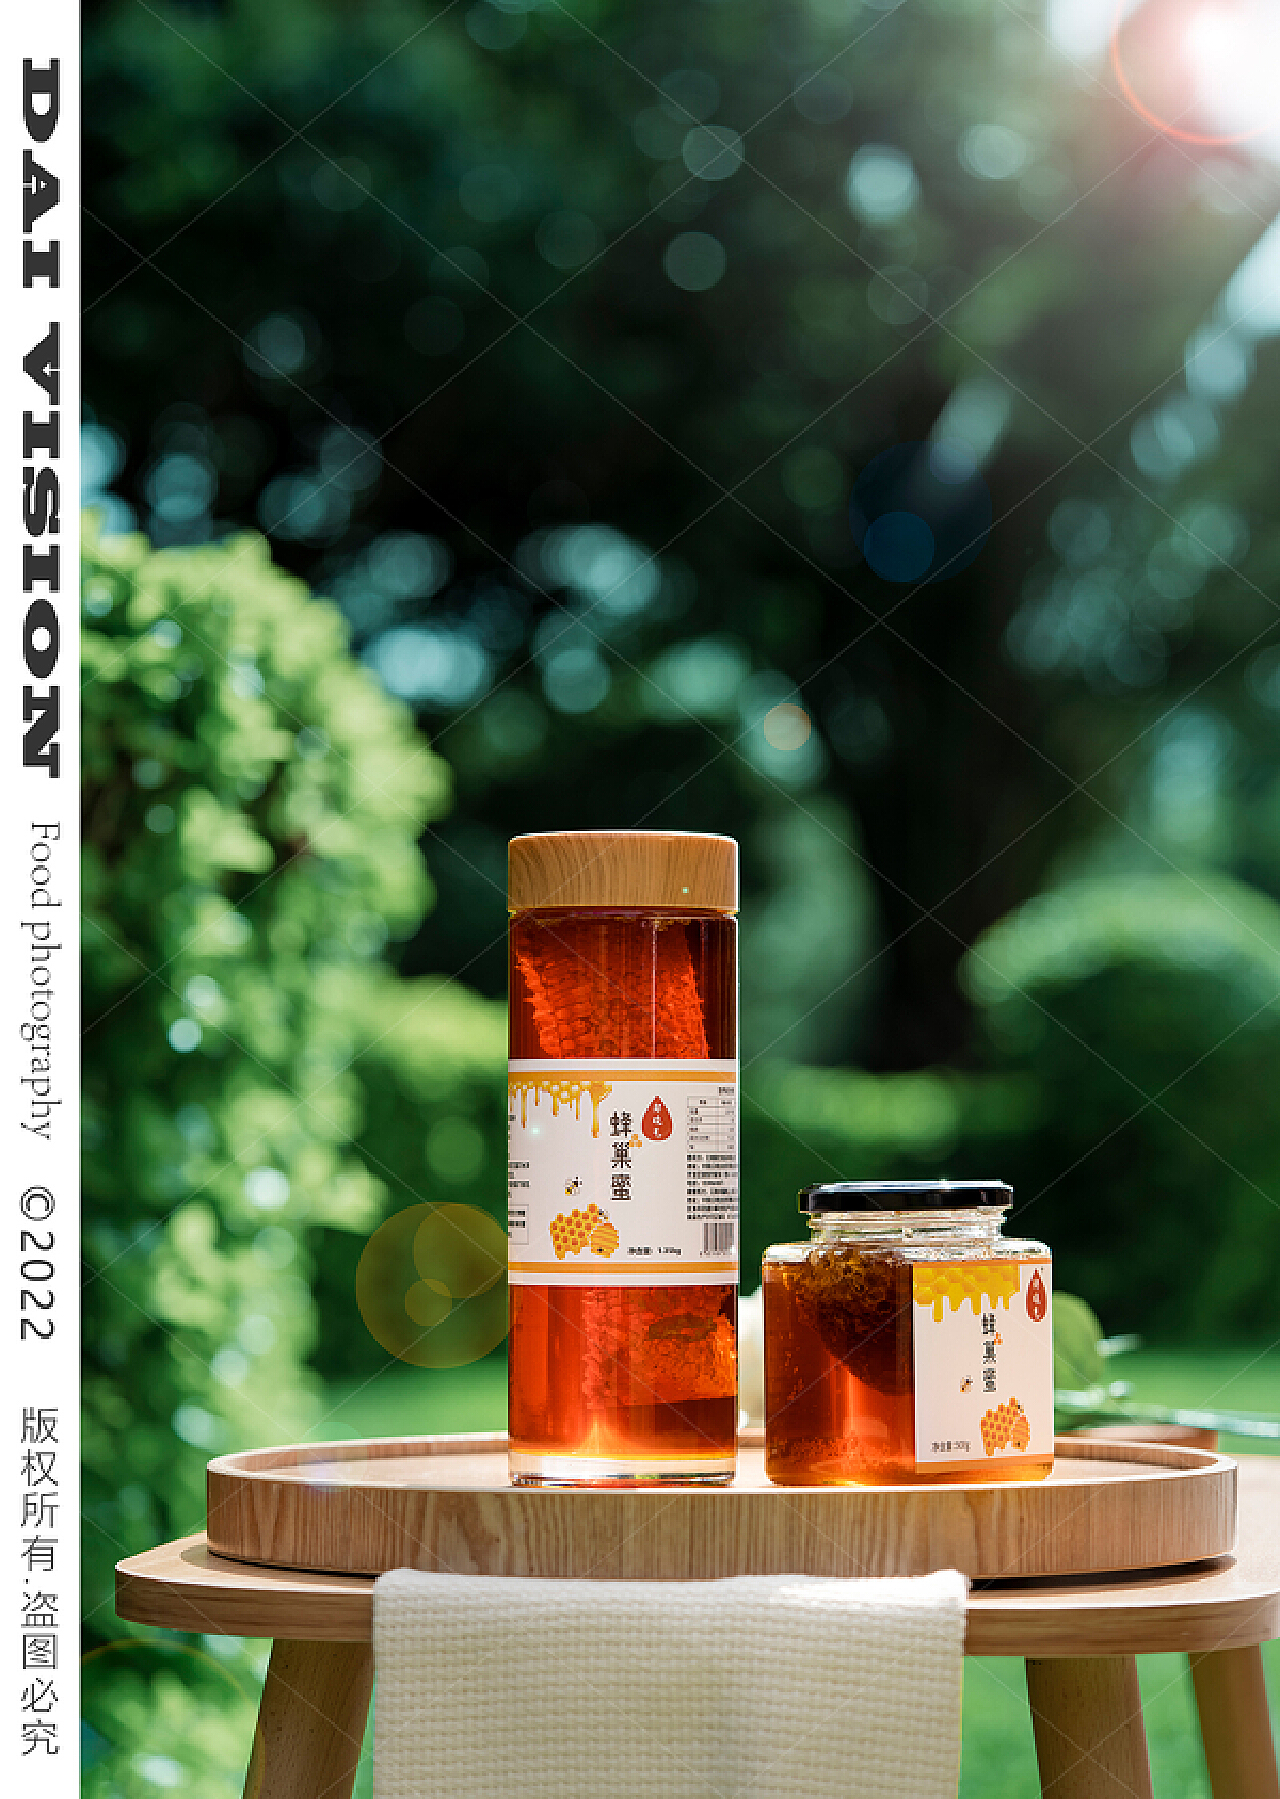 蜂巢蜜批发1斤嚼着吃自然成熟封盖蜂窝蜜500g荆条新巢蜜农家蜂场-阿里巴巴